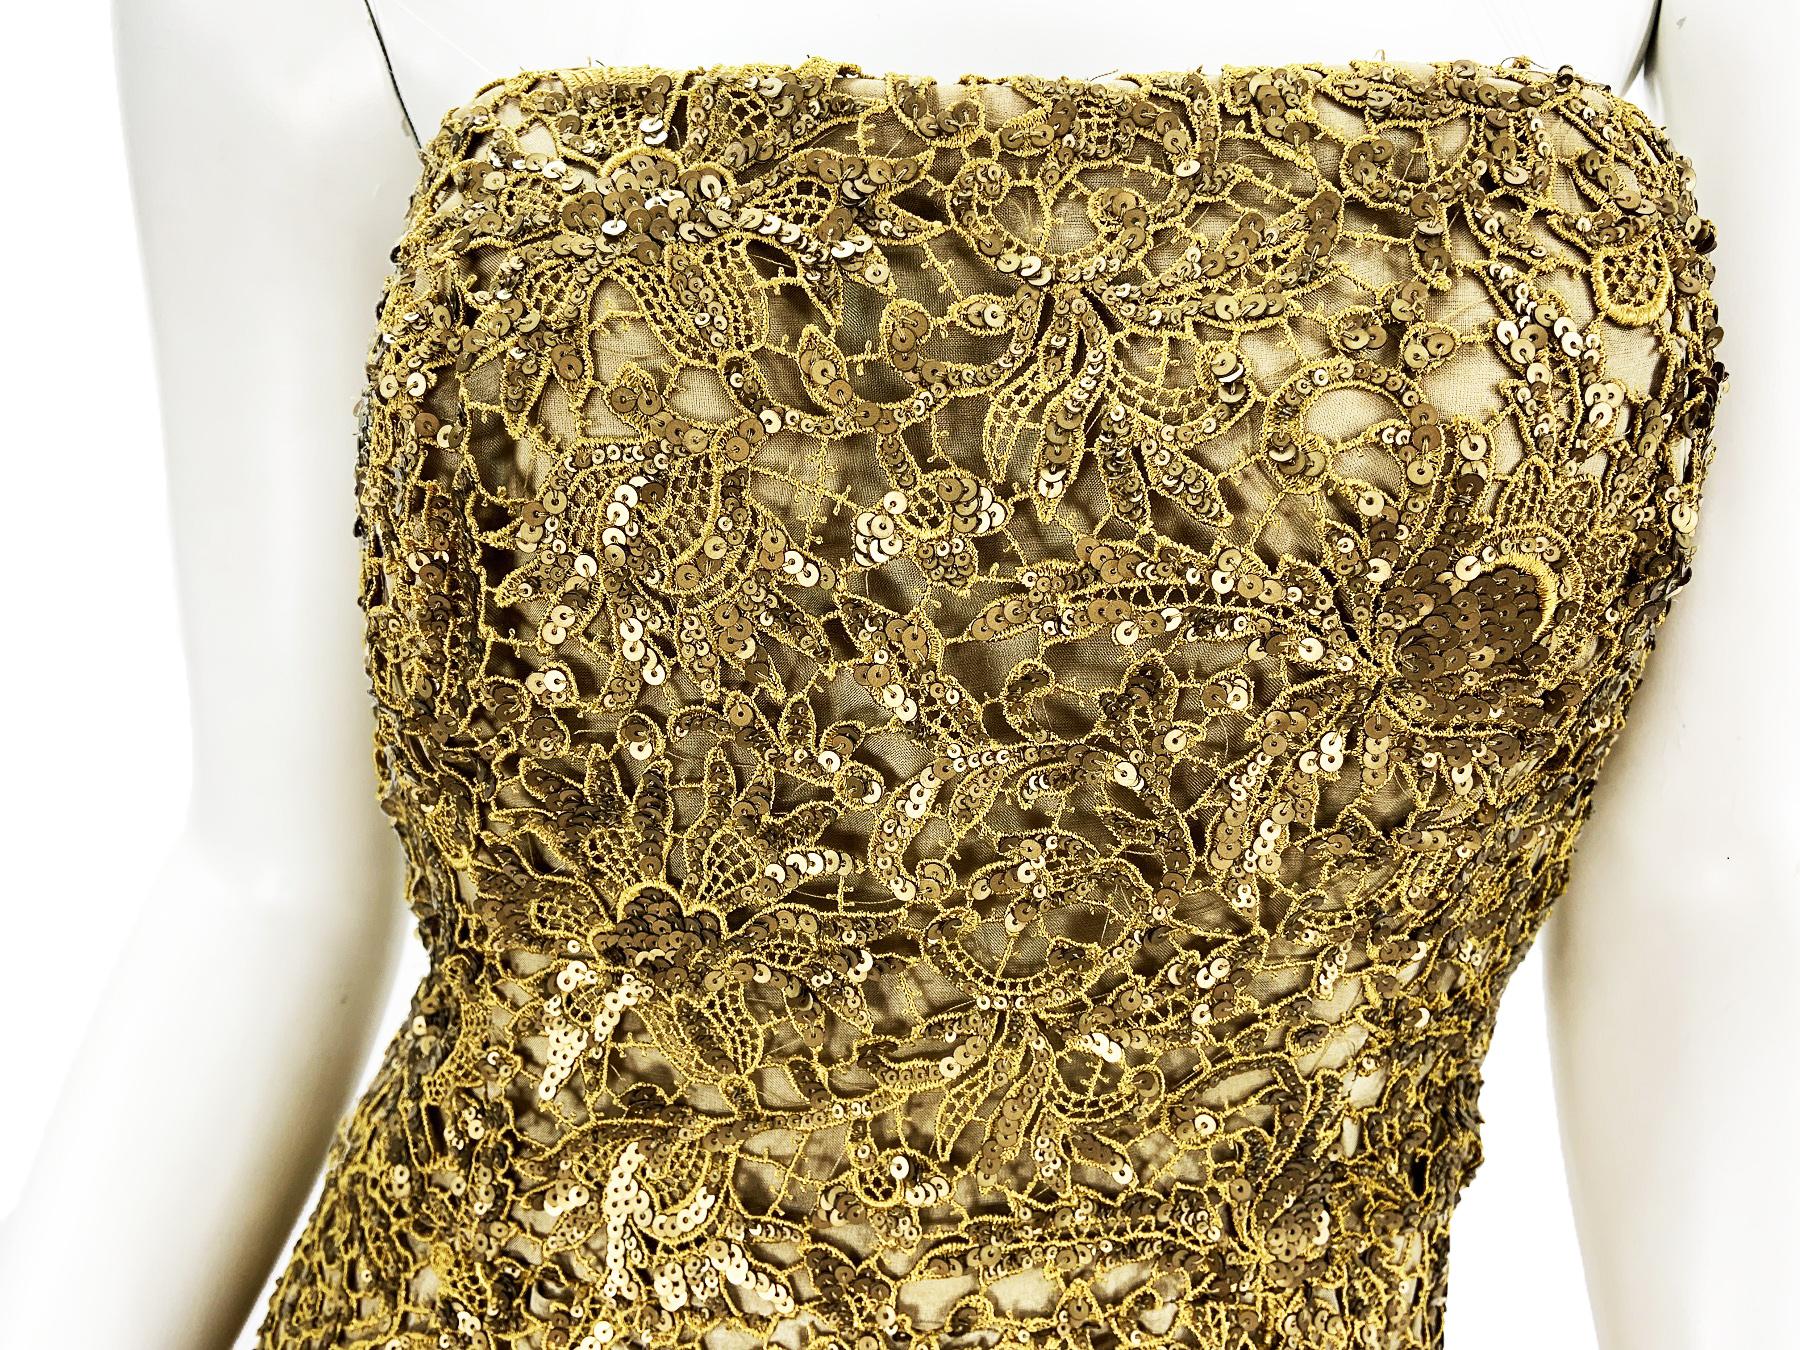 Oscar De La Renta PF 2012 Gold Lace Sequin Embellished Dress Gown + Jacket  For Sale 4